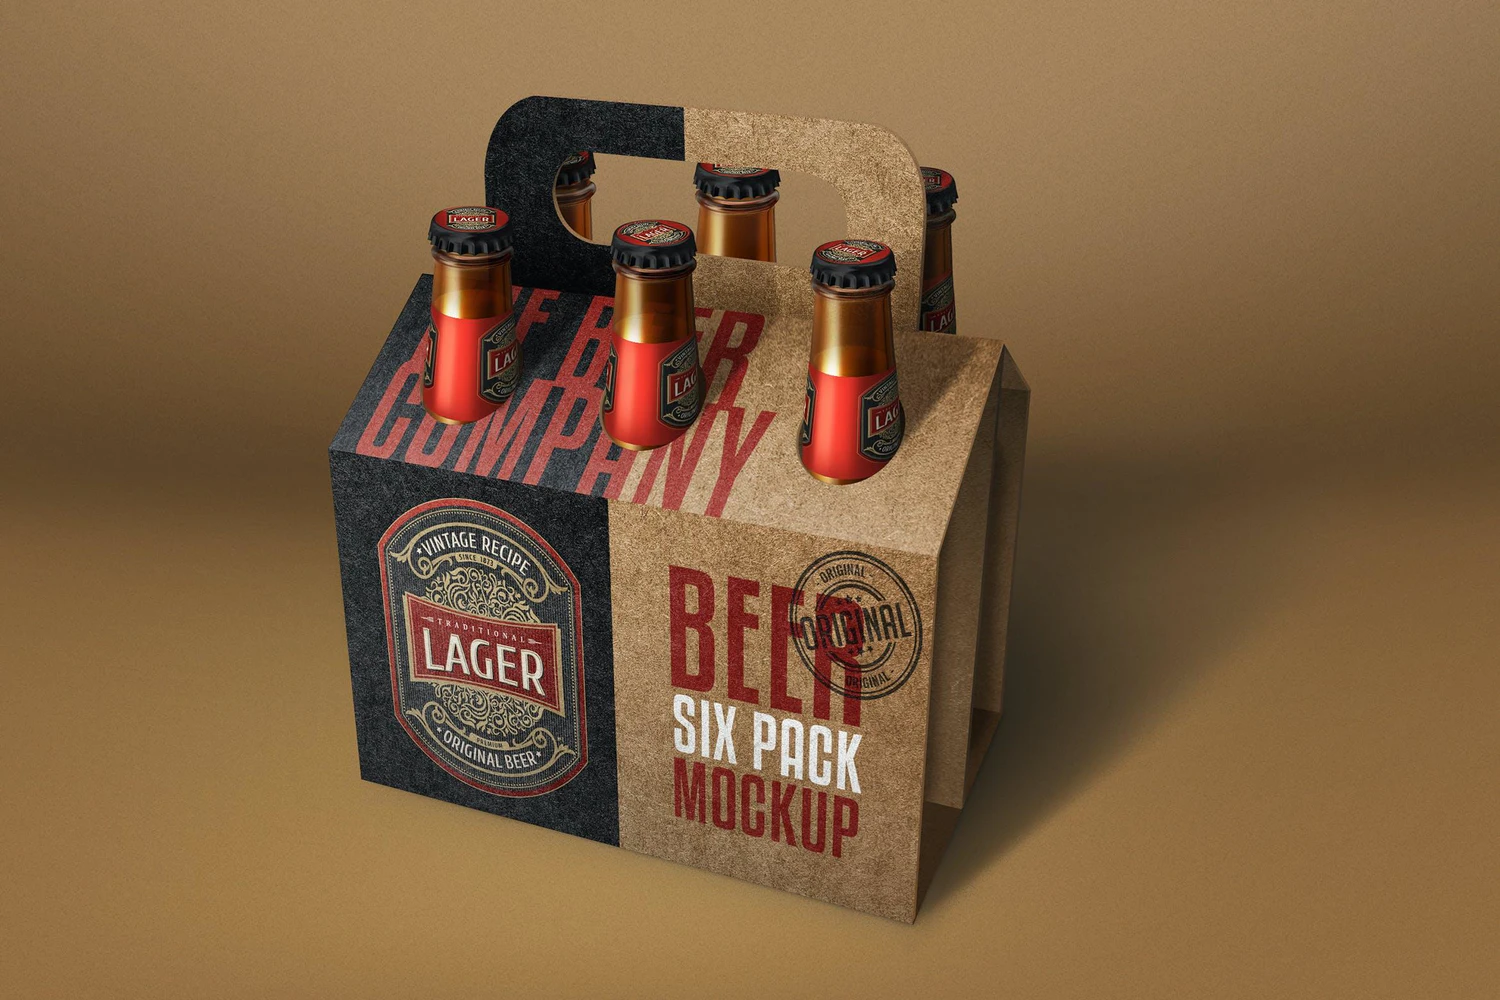 55 六支装手提啤酒瓶包装设计样机 Beer Bottle Six Pack Mockup